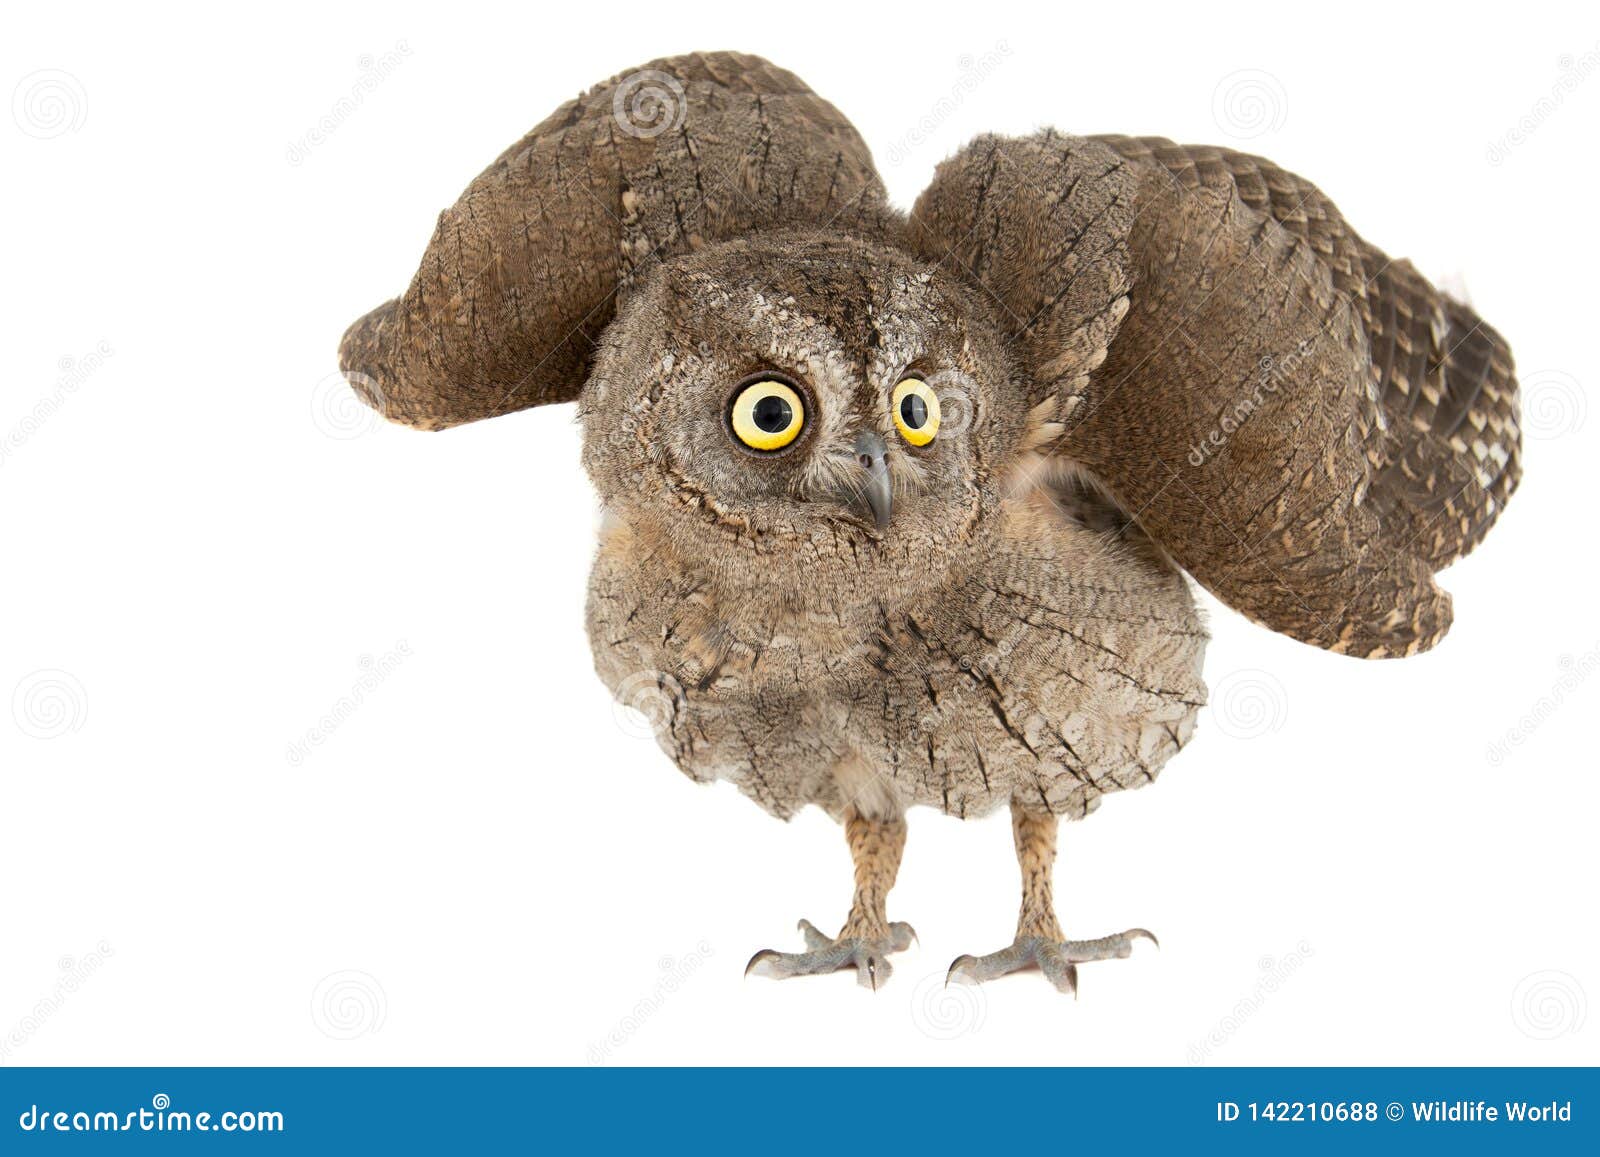 owls - european scops owl, otus scops, with open wings.  on white background